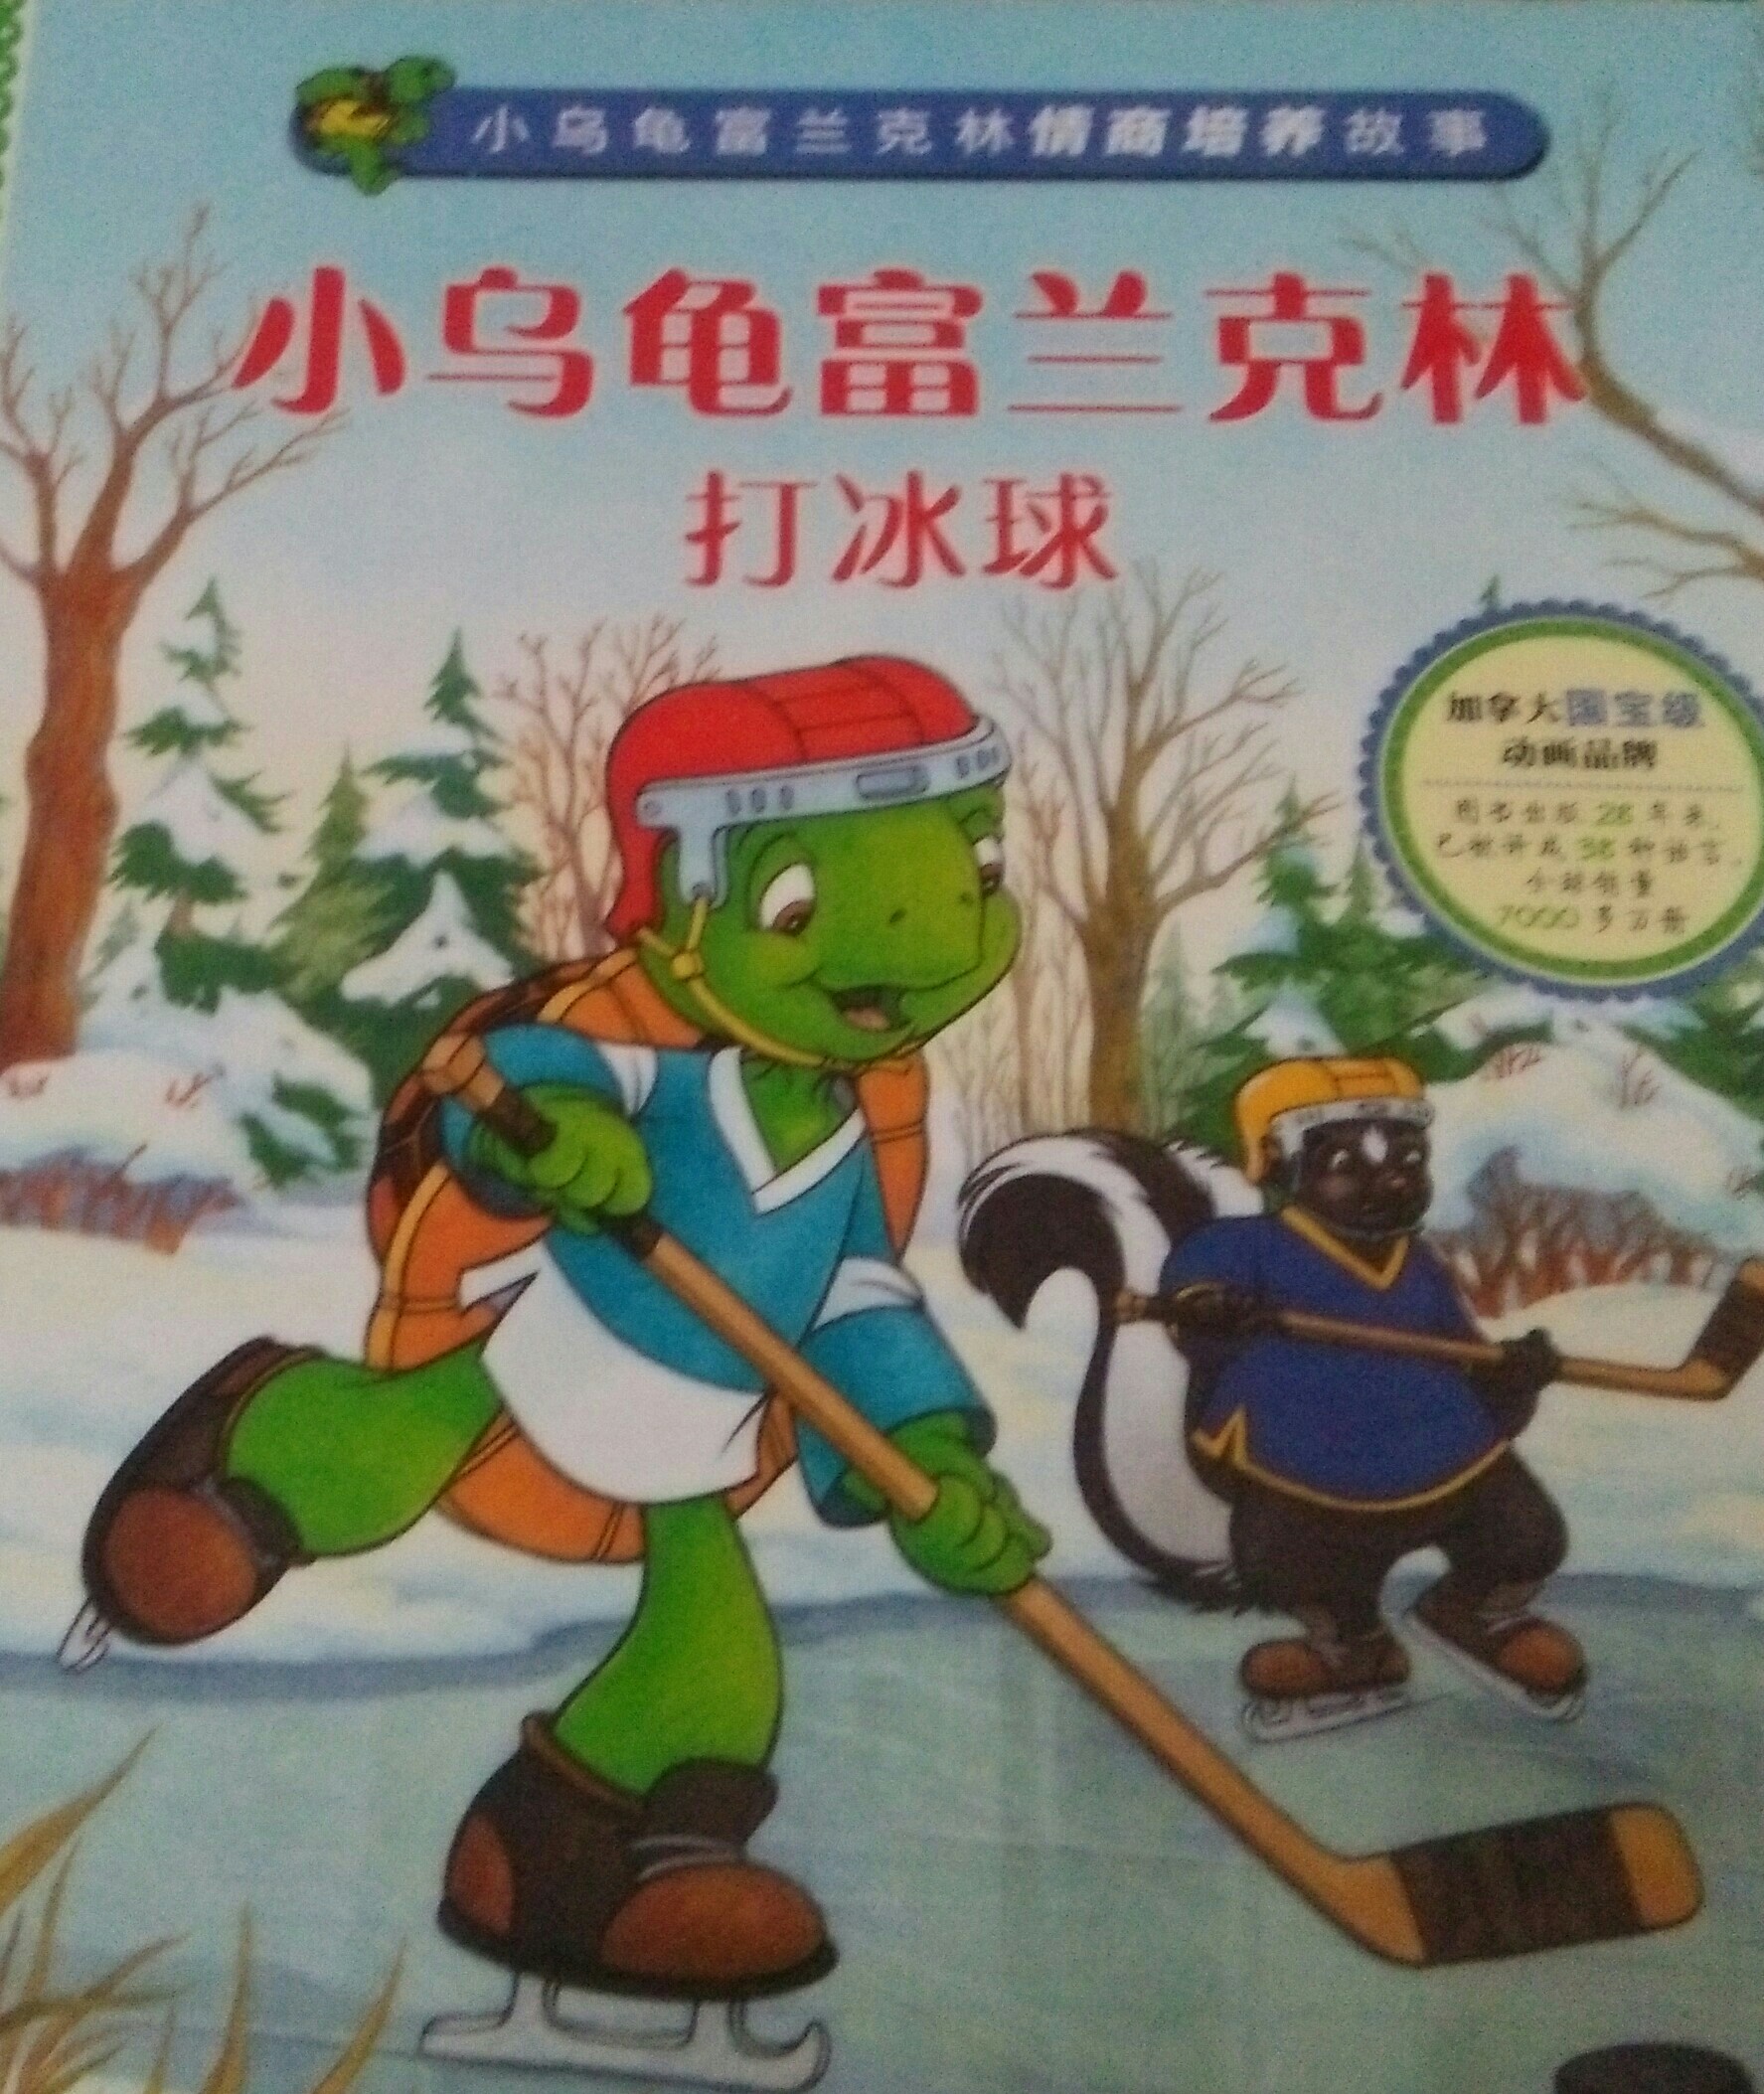 小乌龟富兰克林打冰球(人际交往)